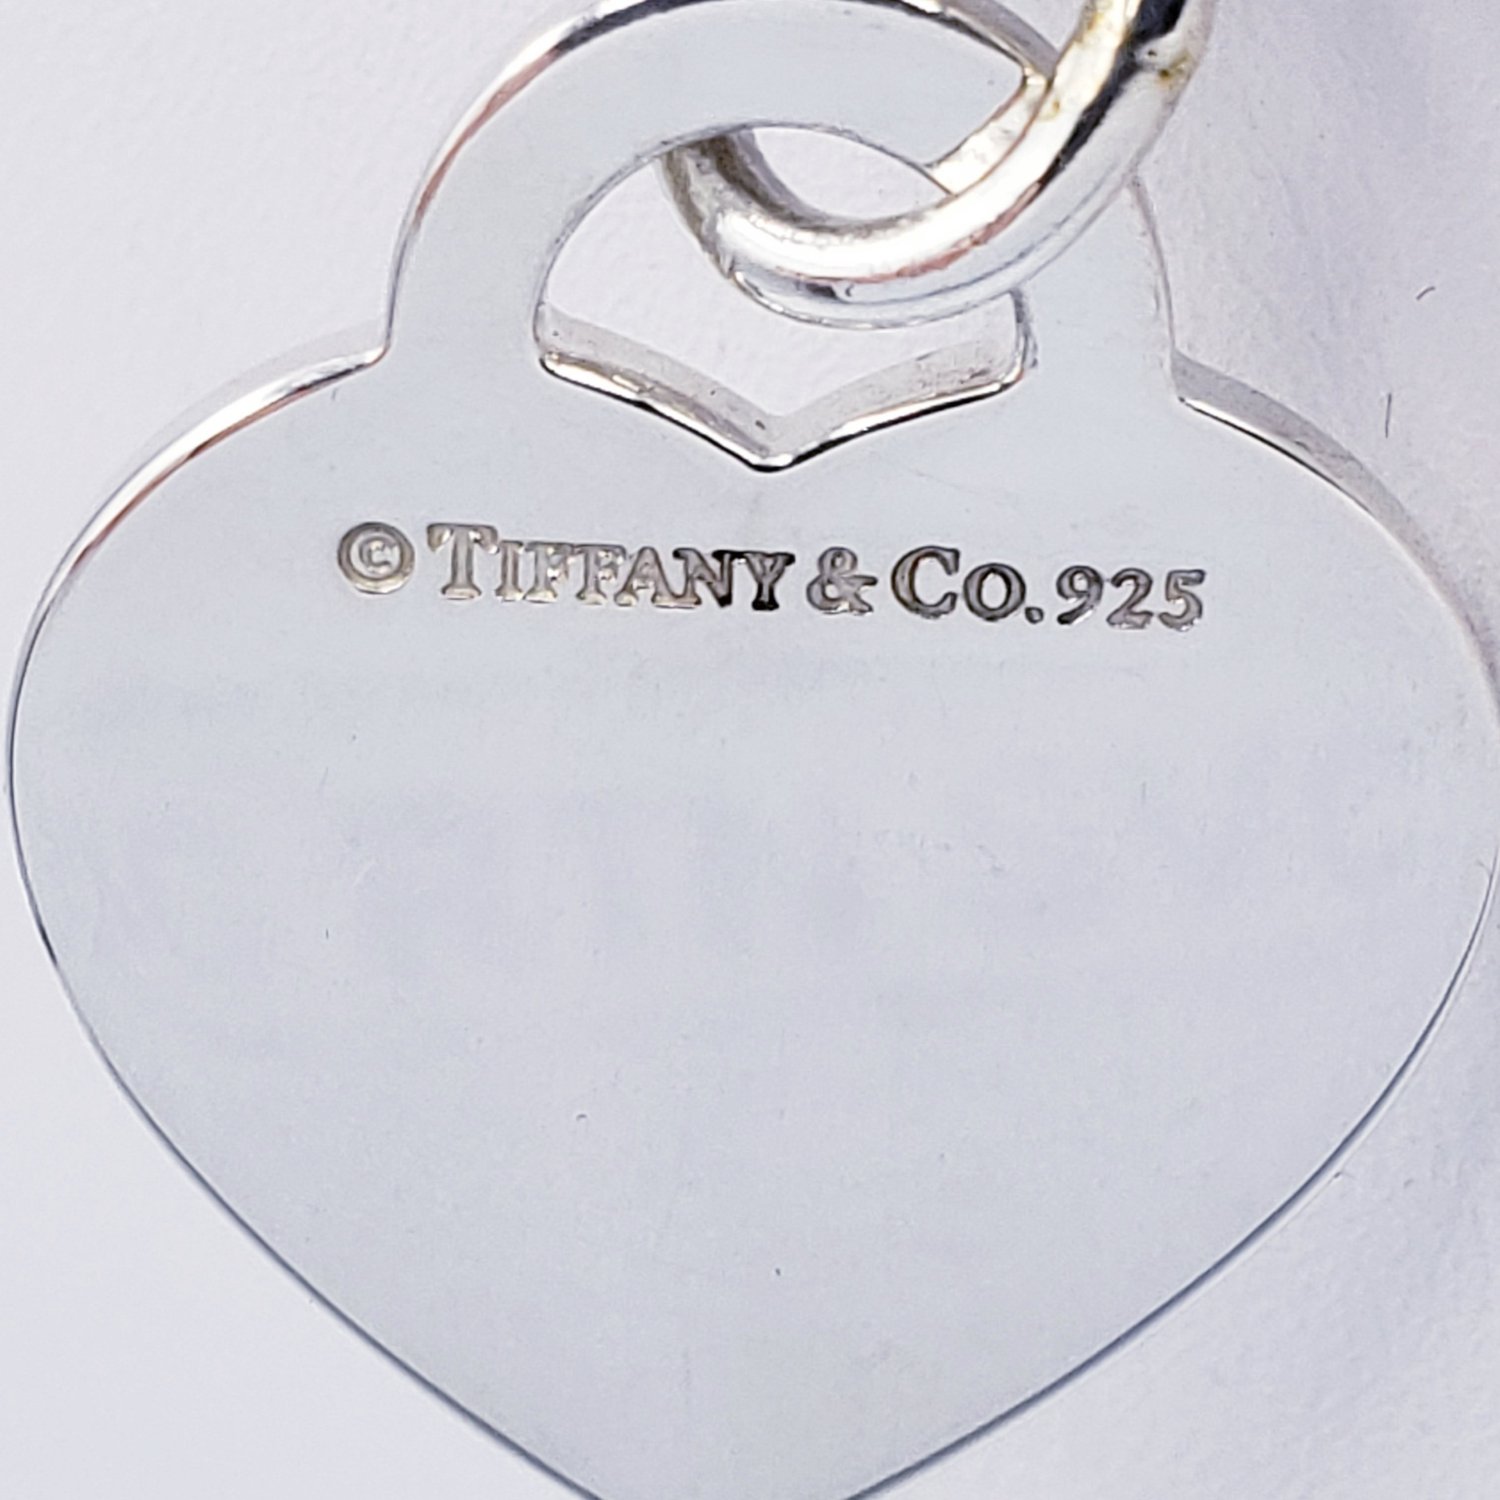 Tiffany & Co Return to Tiffany Heart Padlock Necklace